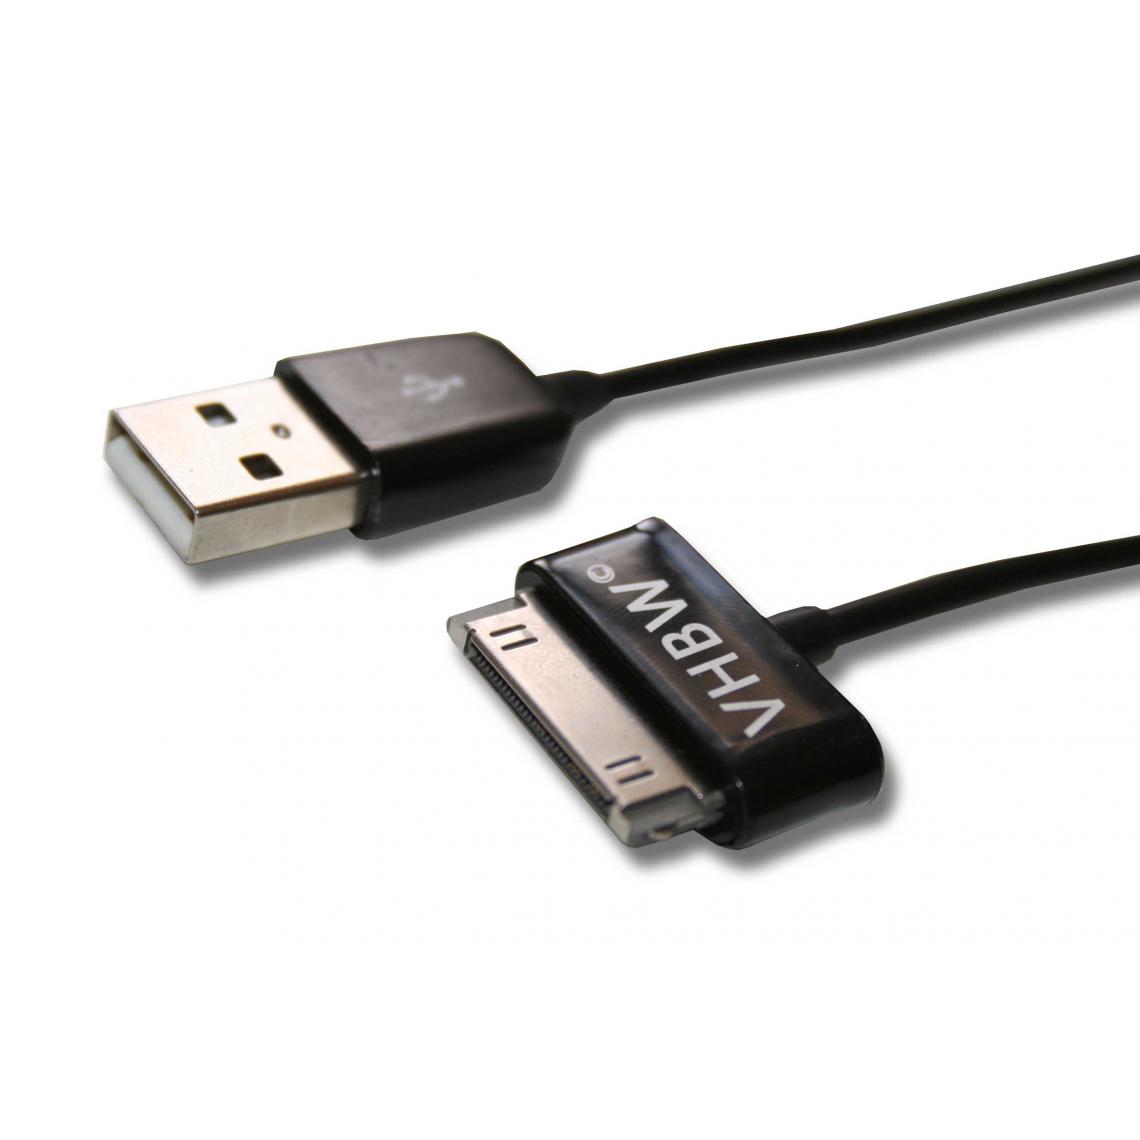 Vhbw - vhbw Câble de données USB (type A sur tablette) 2en1 câble de chargement 120cm convient pour Samsung Galaxy Tab GT-P7501, GT-P7510 tablette - noir - Support téléphone pour voiture